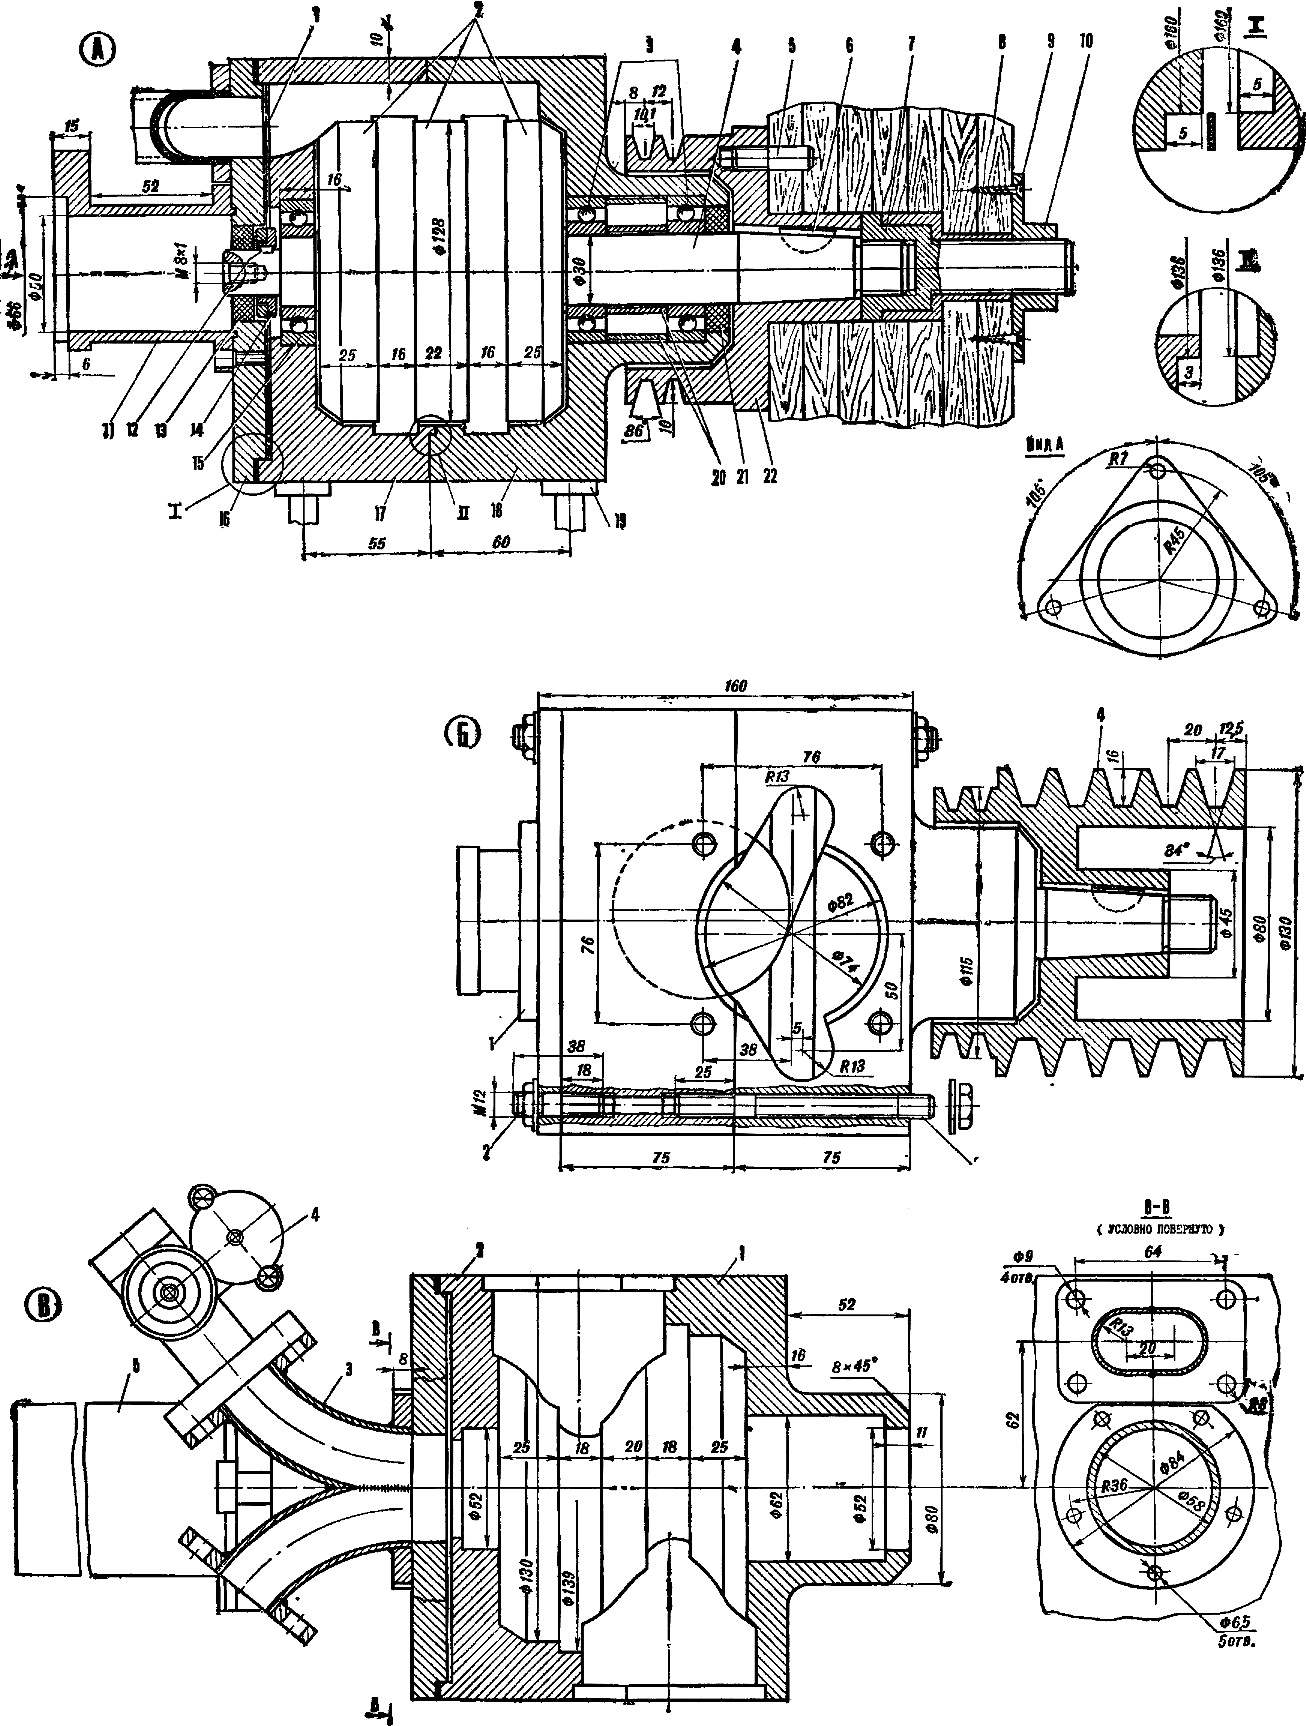 Рис. 3. Универсальный оппозитный двухцилиндровый двигатель КА-1 с золотниковым распределением.